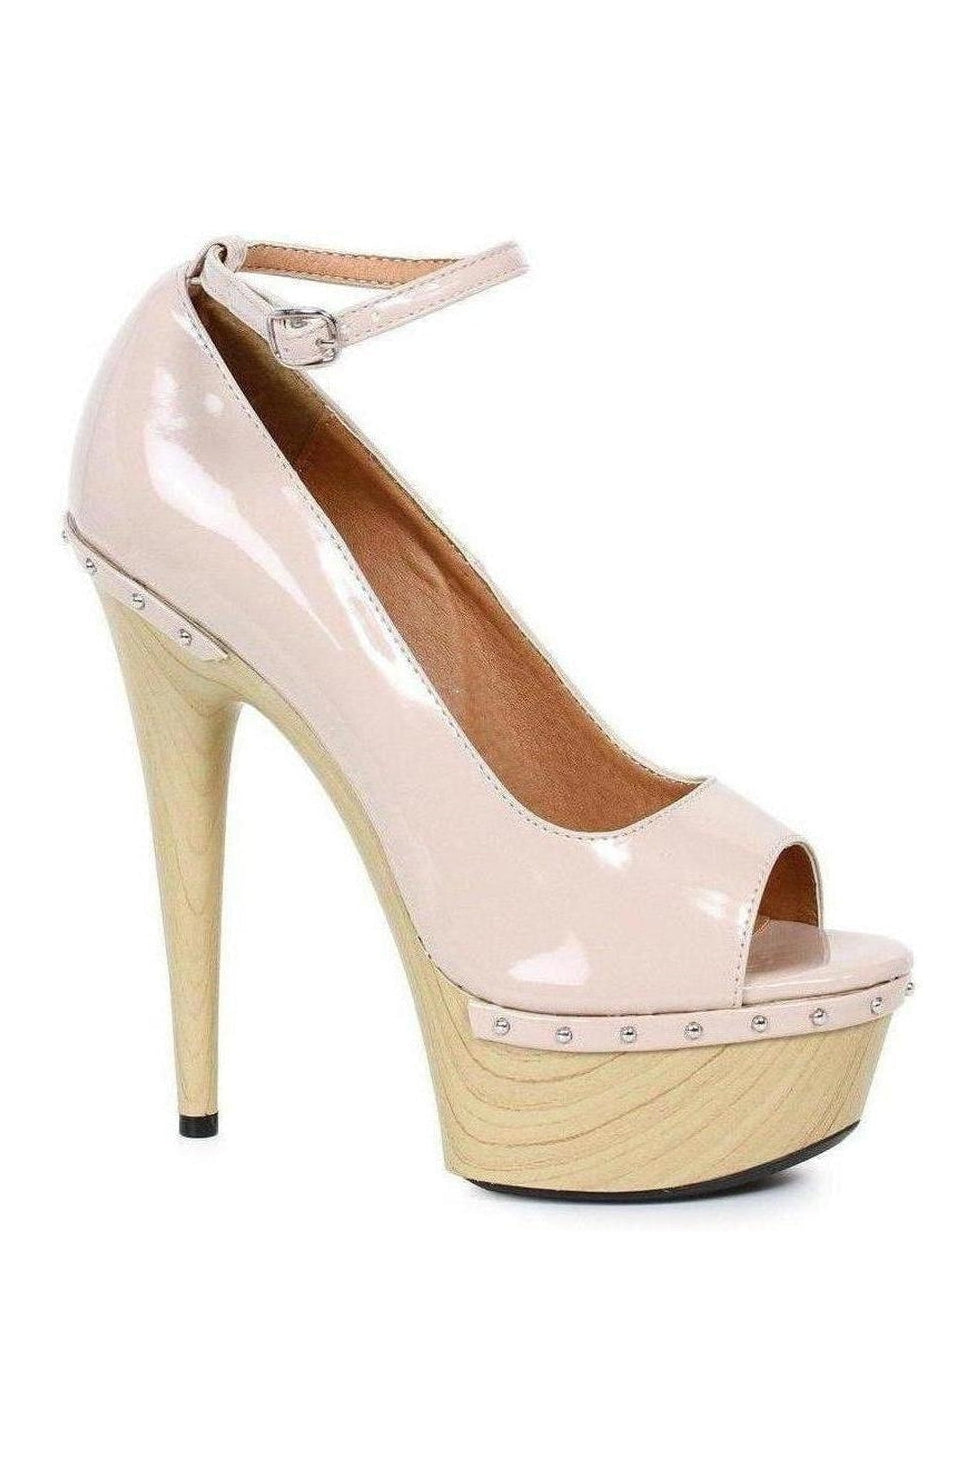 609-VALERIE Platform Sandal | Nude Patent-Ellie Shoes-SEXYSHOES.COM